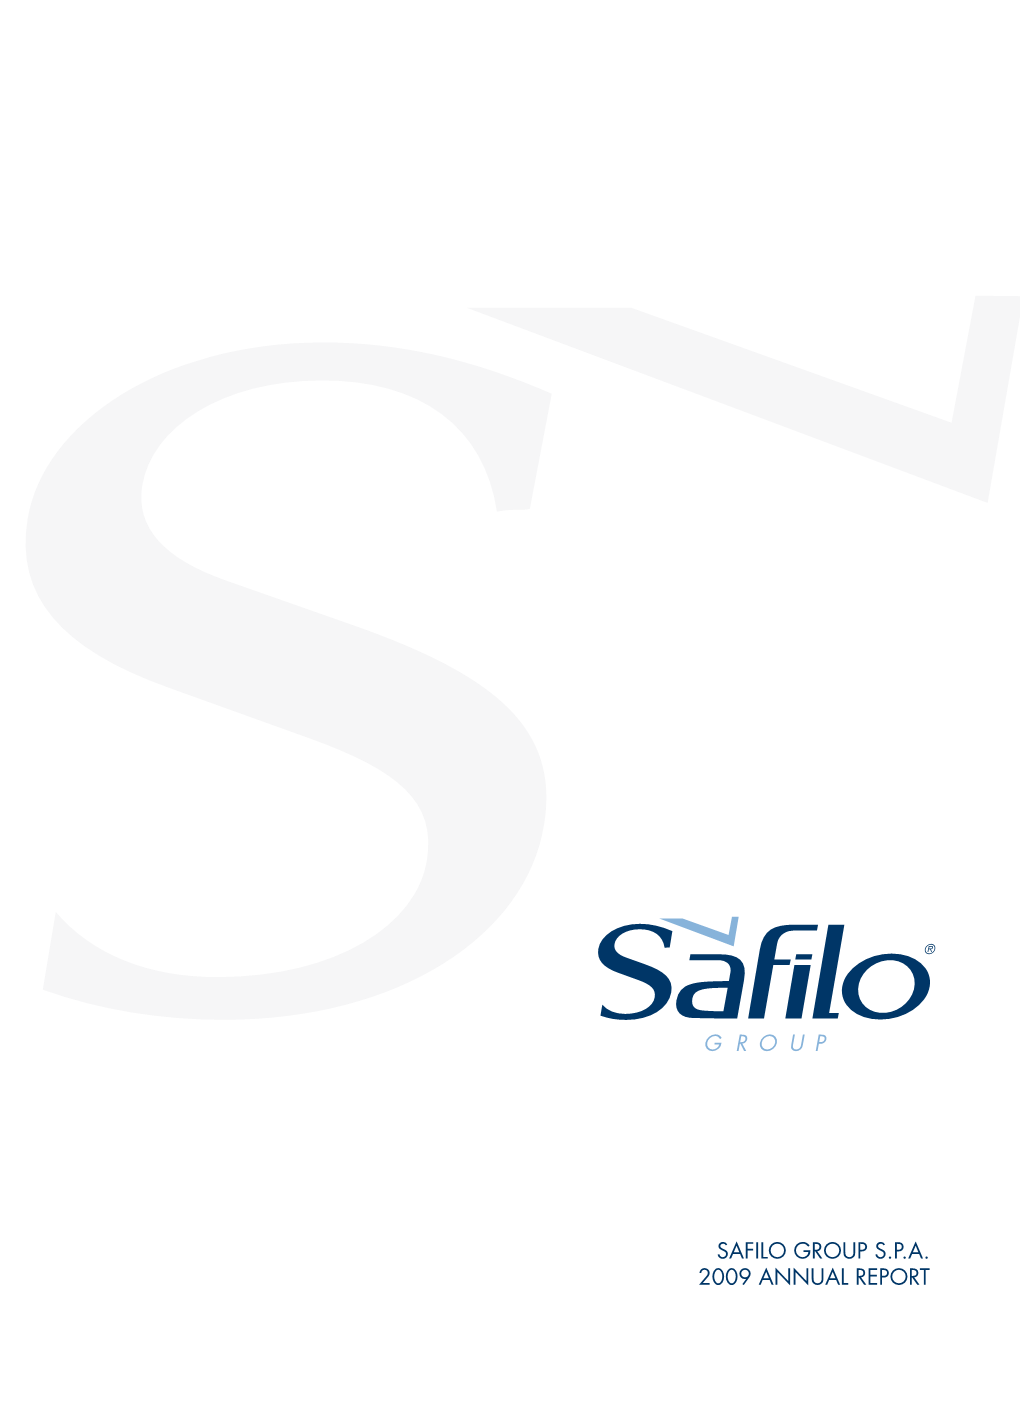 Safilo Group S.P.A. 2009 Annual Report